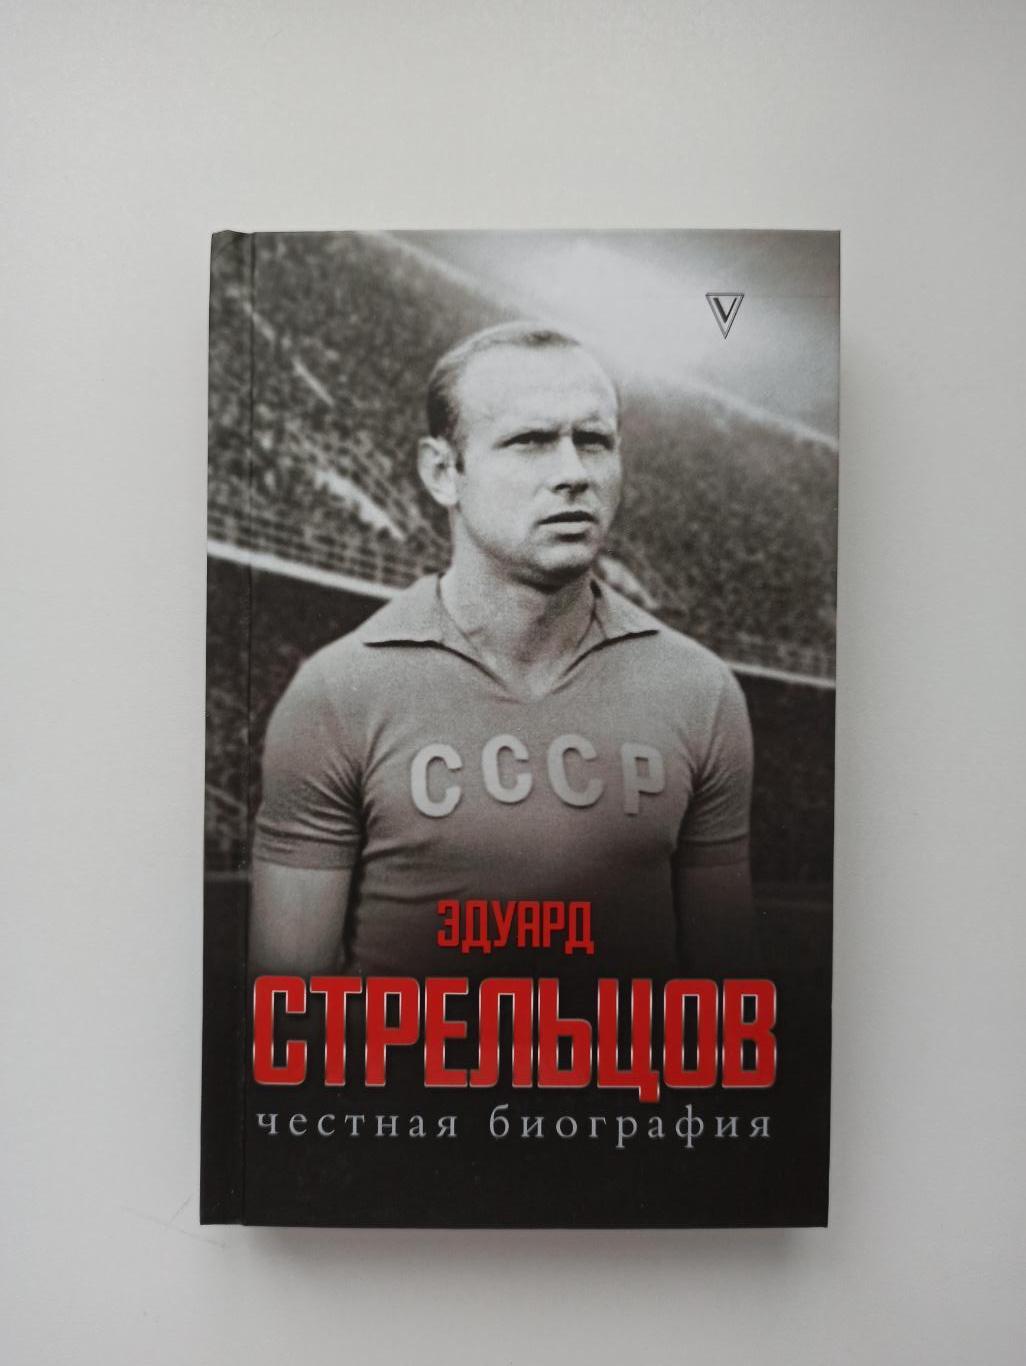 Футбол, Эдуард Стрельцов, Честная биография, Торпедо Москва